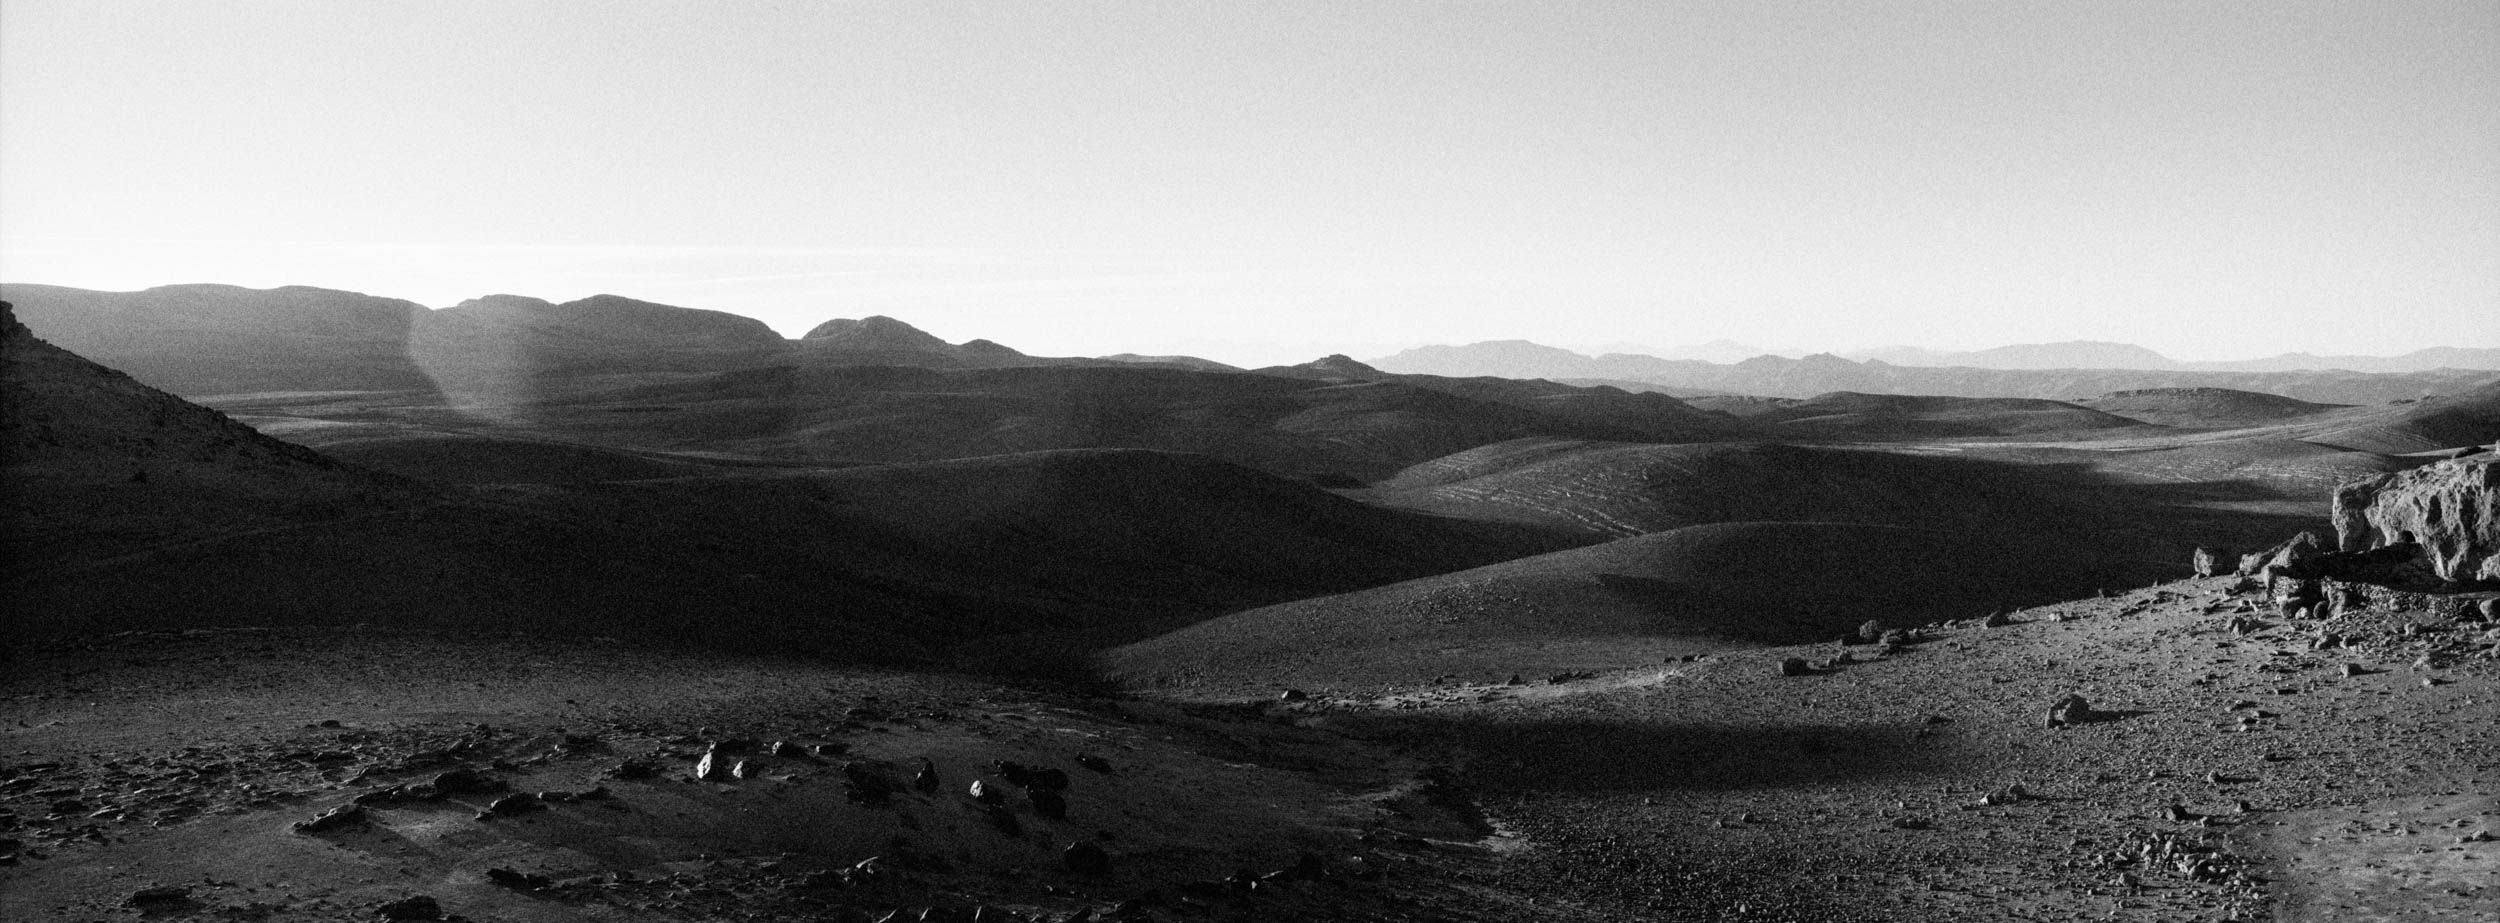 Des montagnes de l'Atlas au désert - Martin Gros